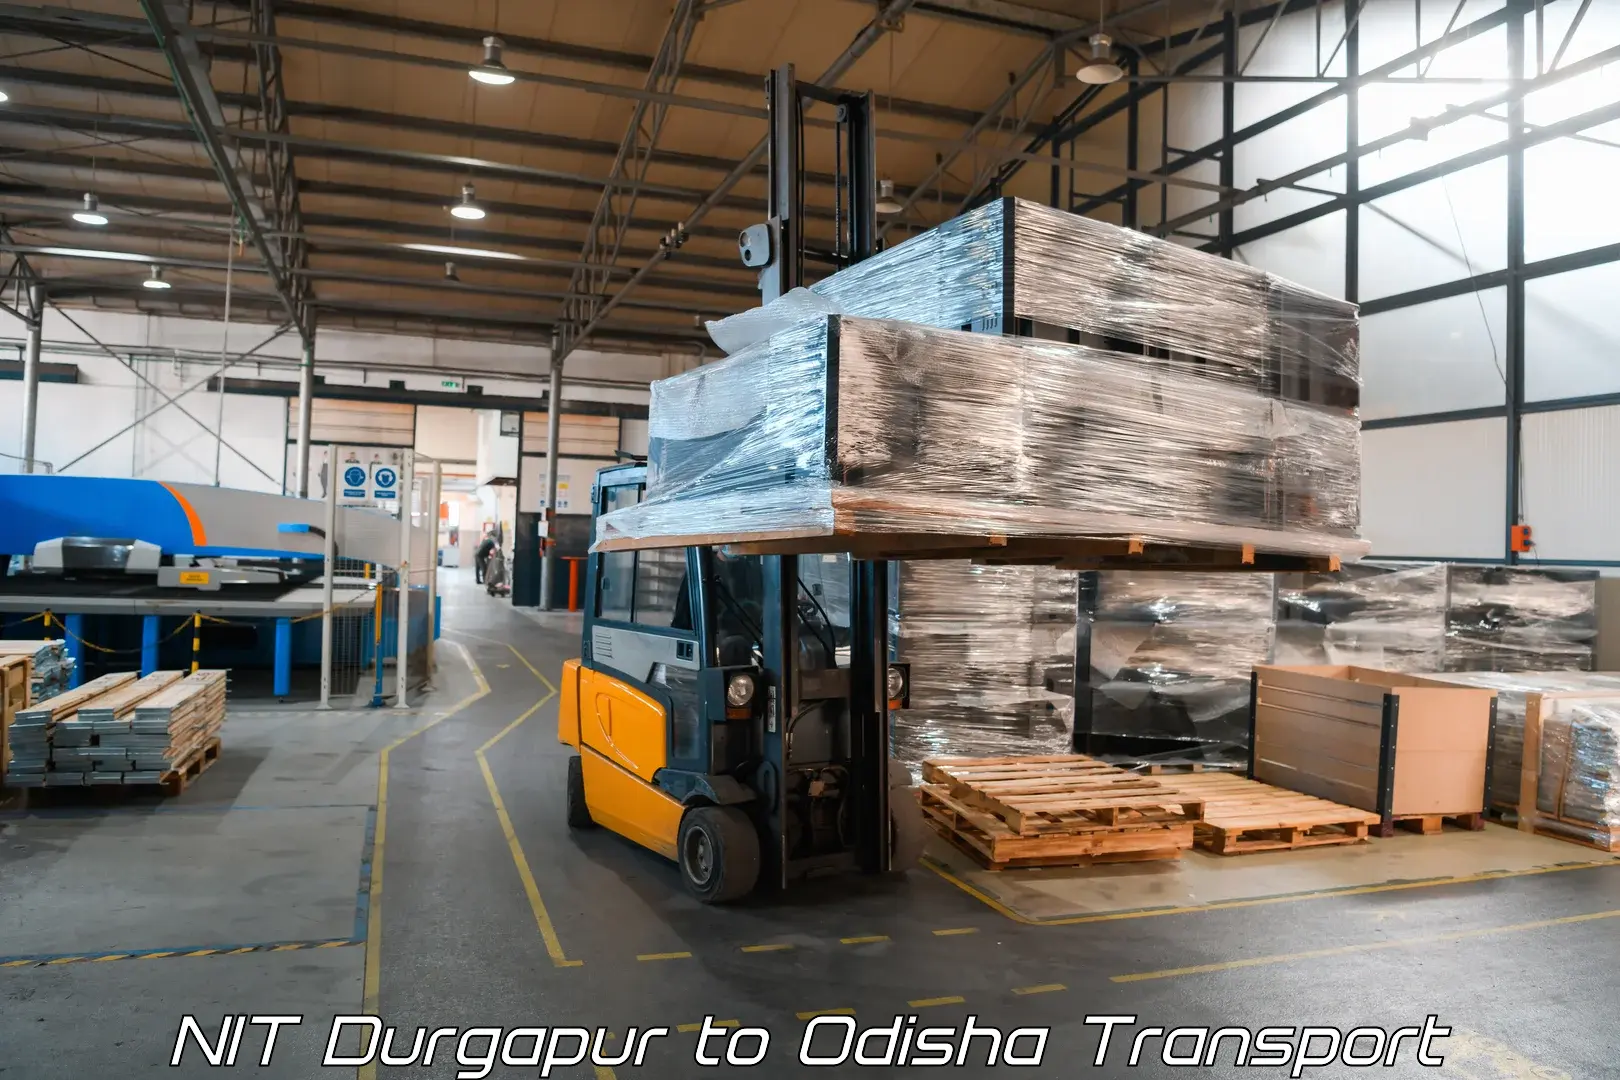 Cargo transportation services NIT Durgapur to Patkura